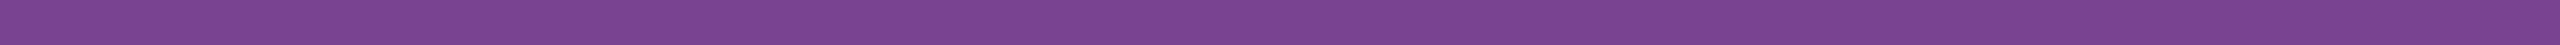 a purple bar